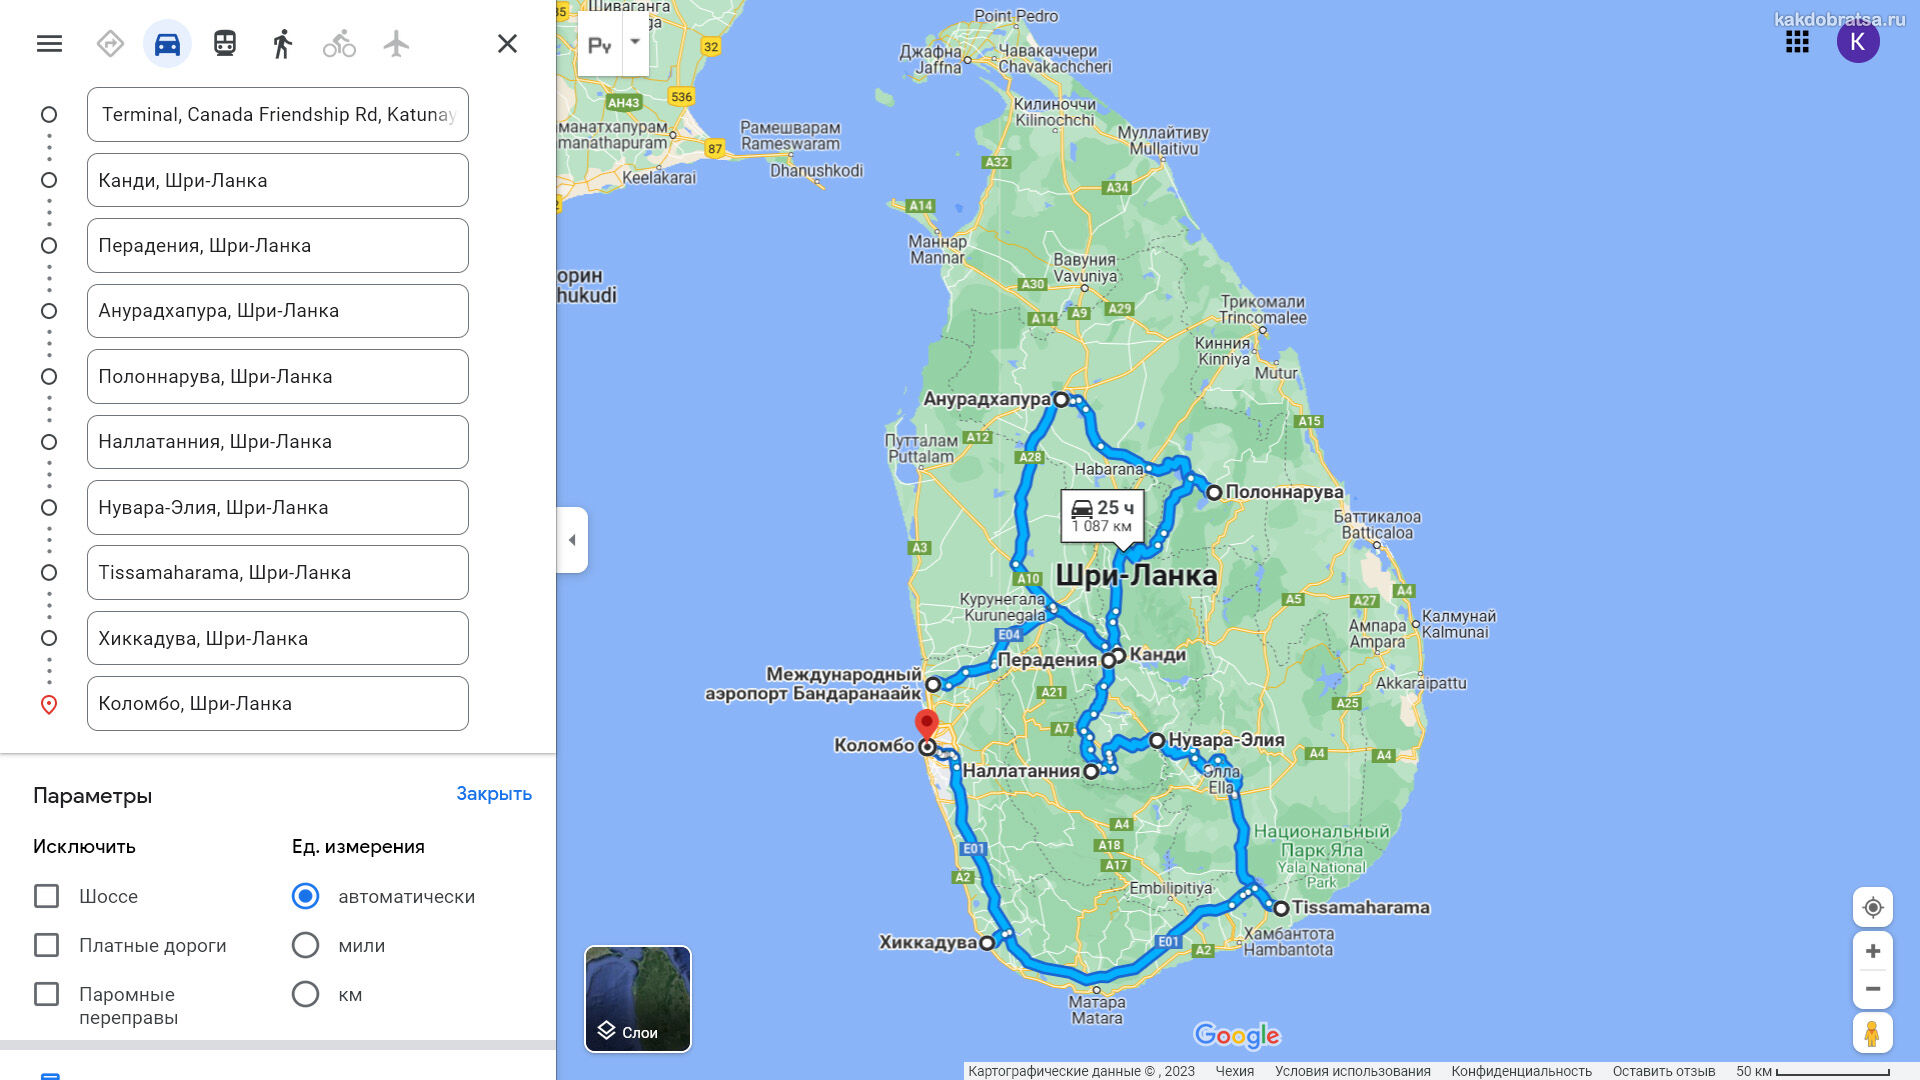 Маршрут путешествия по Шри-Ланке на карте